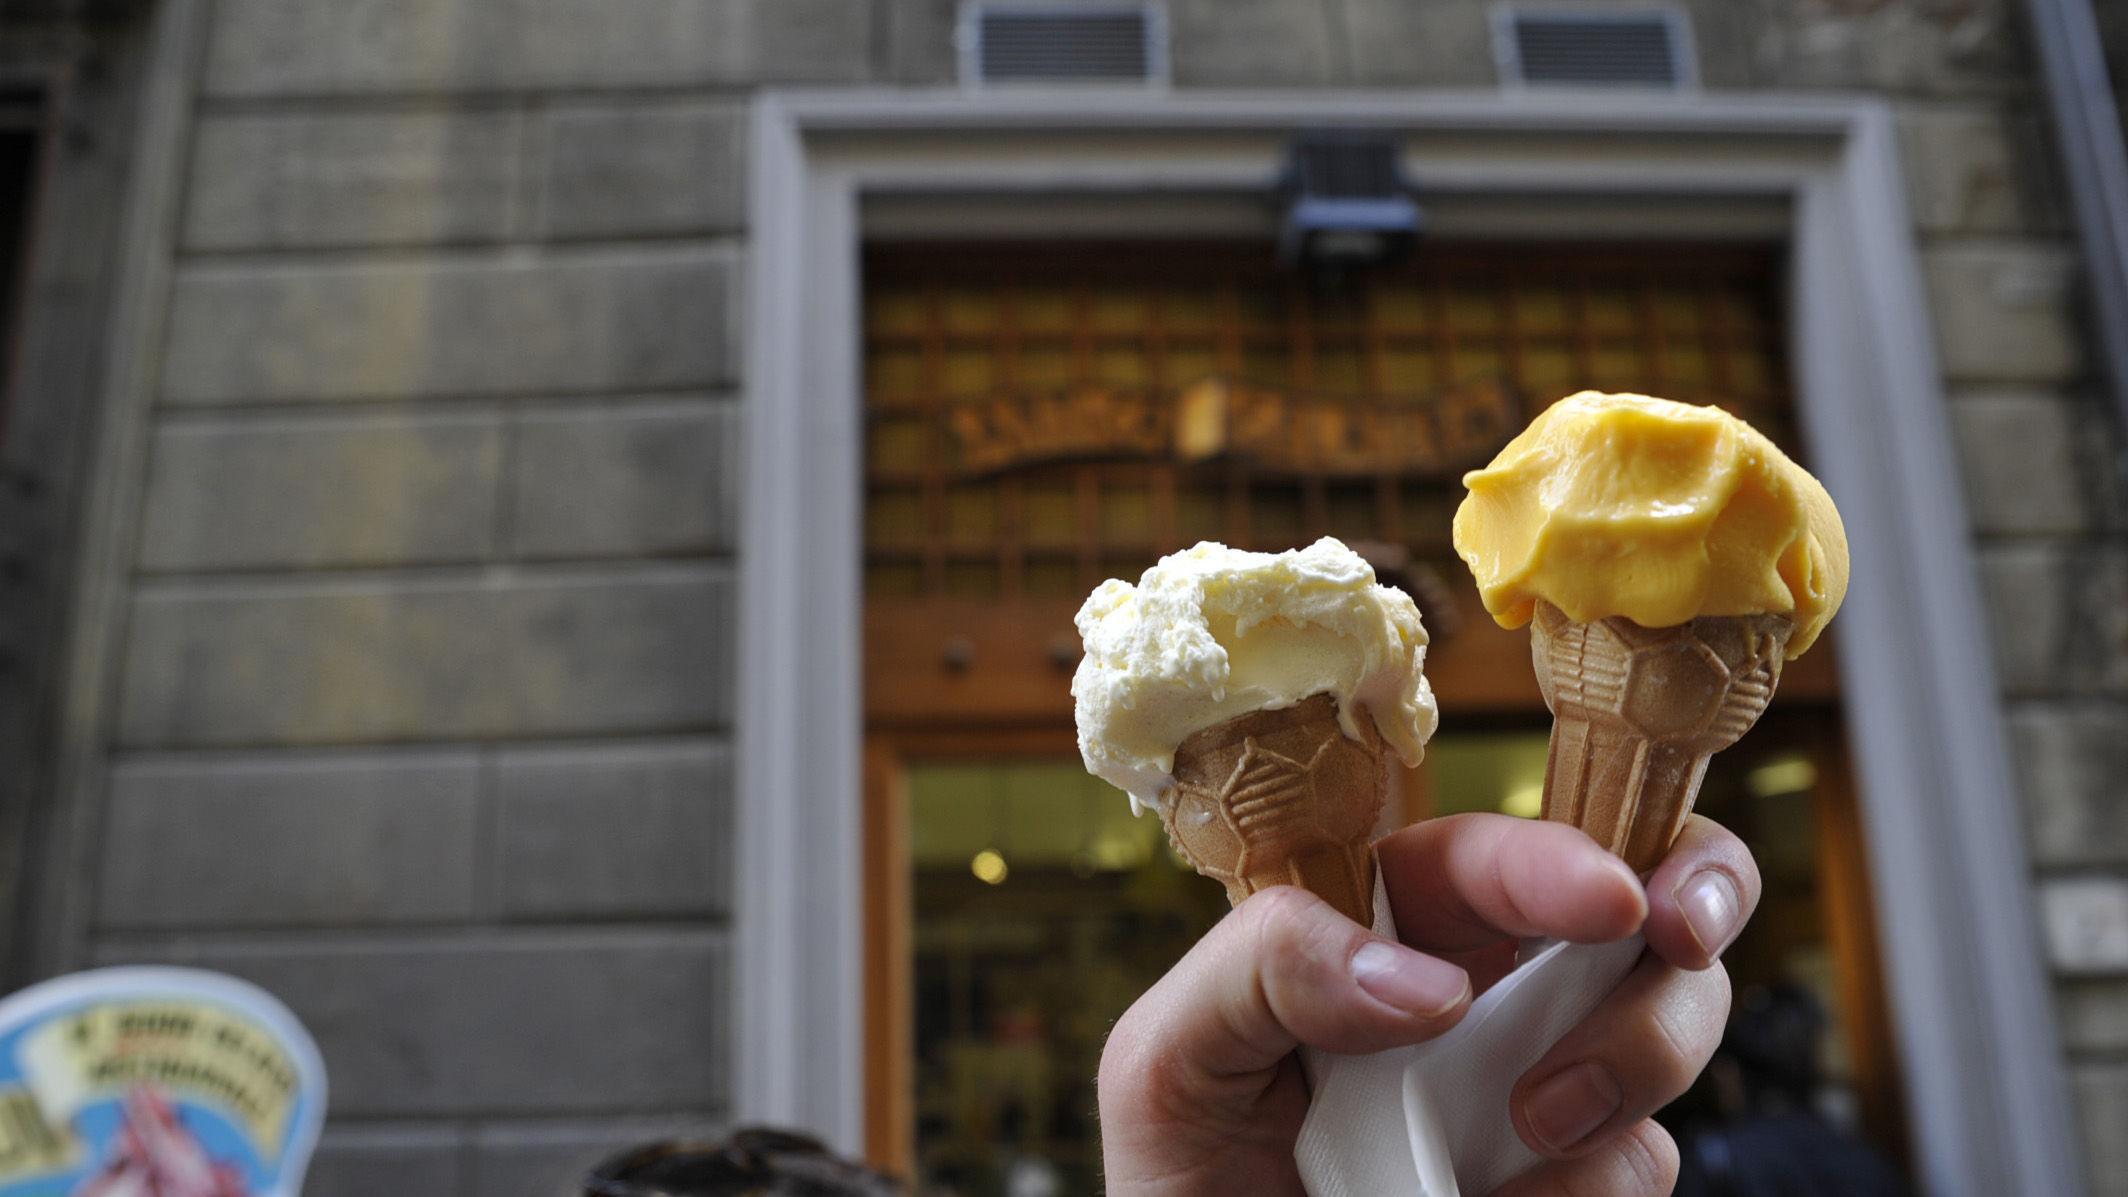 RIK TRADISJON: Overalt i Italia får du kjøpt hjemmelaget iskrem til et par euro. Foto: Jon Krog Pedersen